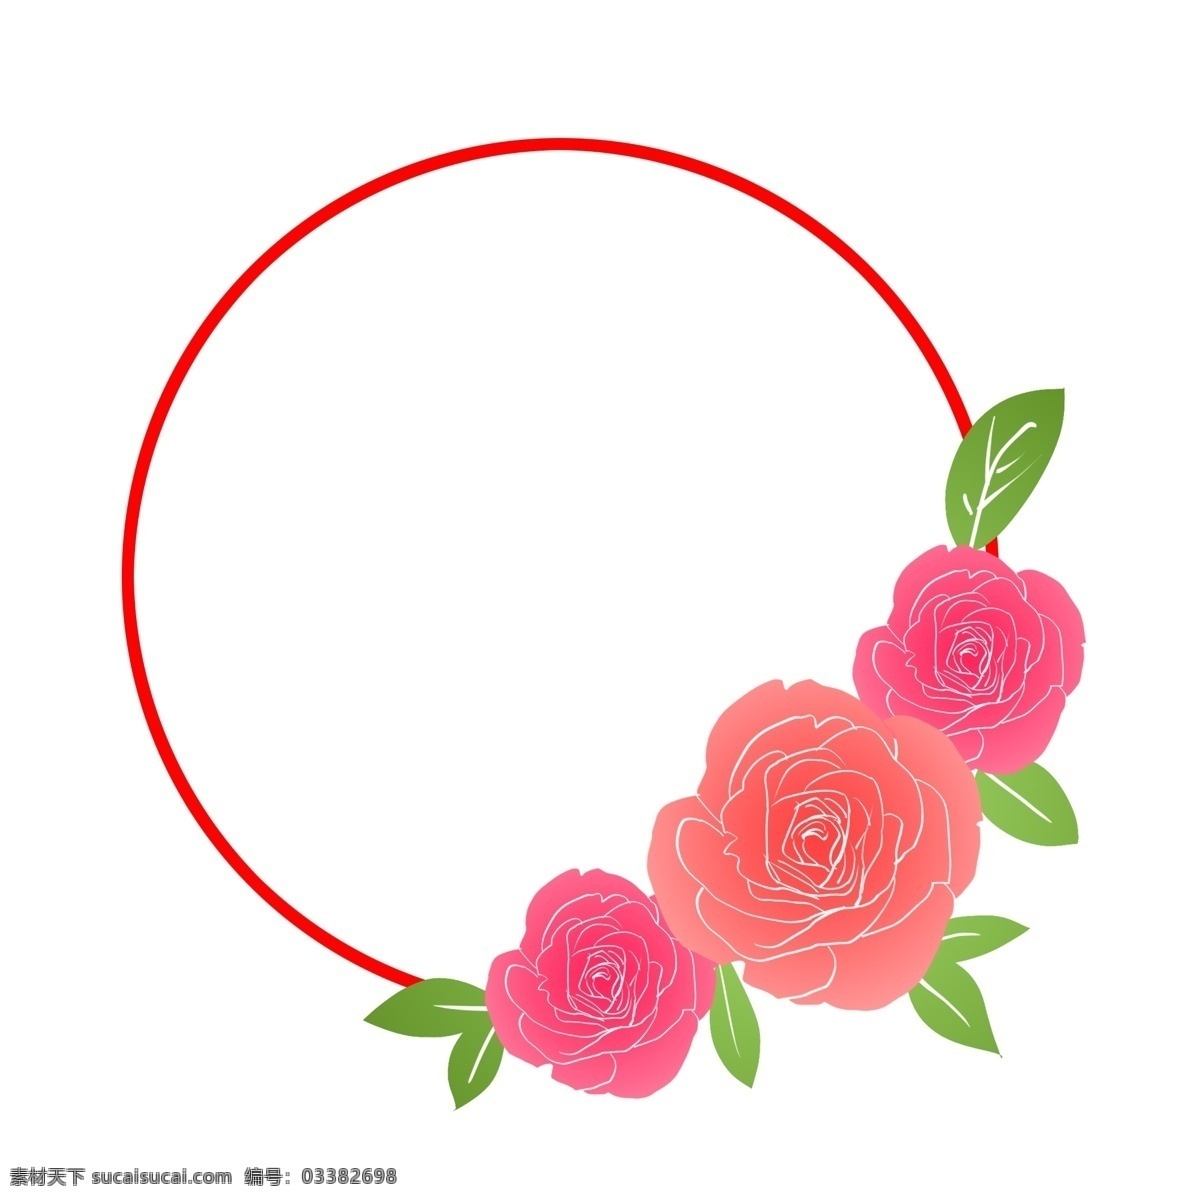 情人节 圆形 花朵 边框 情人节边框 红色的边框 红色的花朵 花卉边框 边框装饰 节日边框 浪漫边框